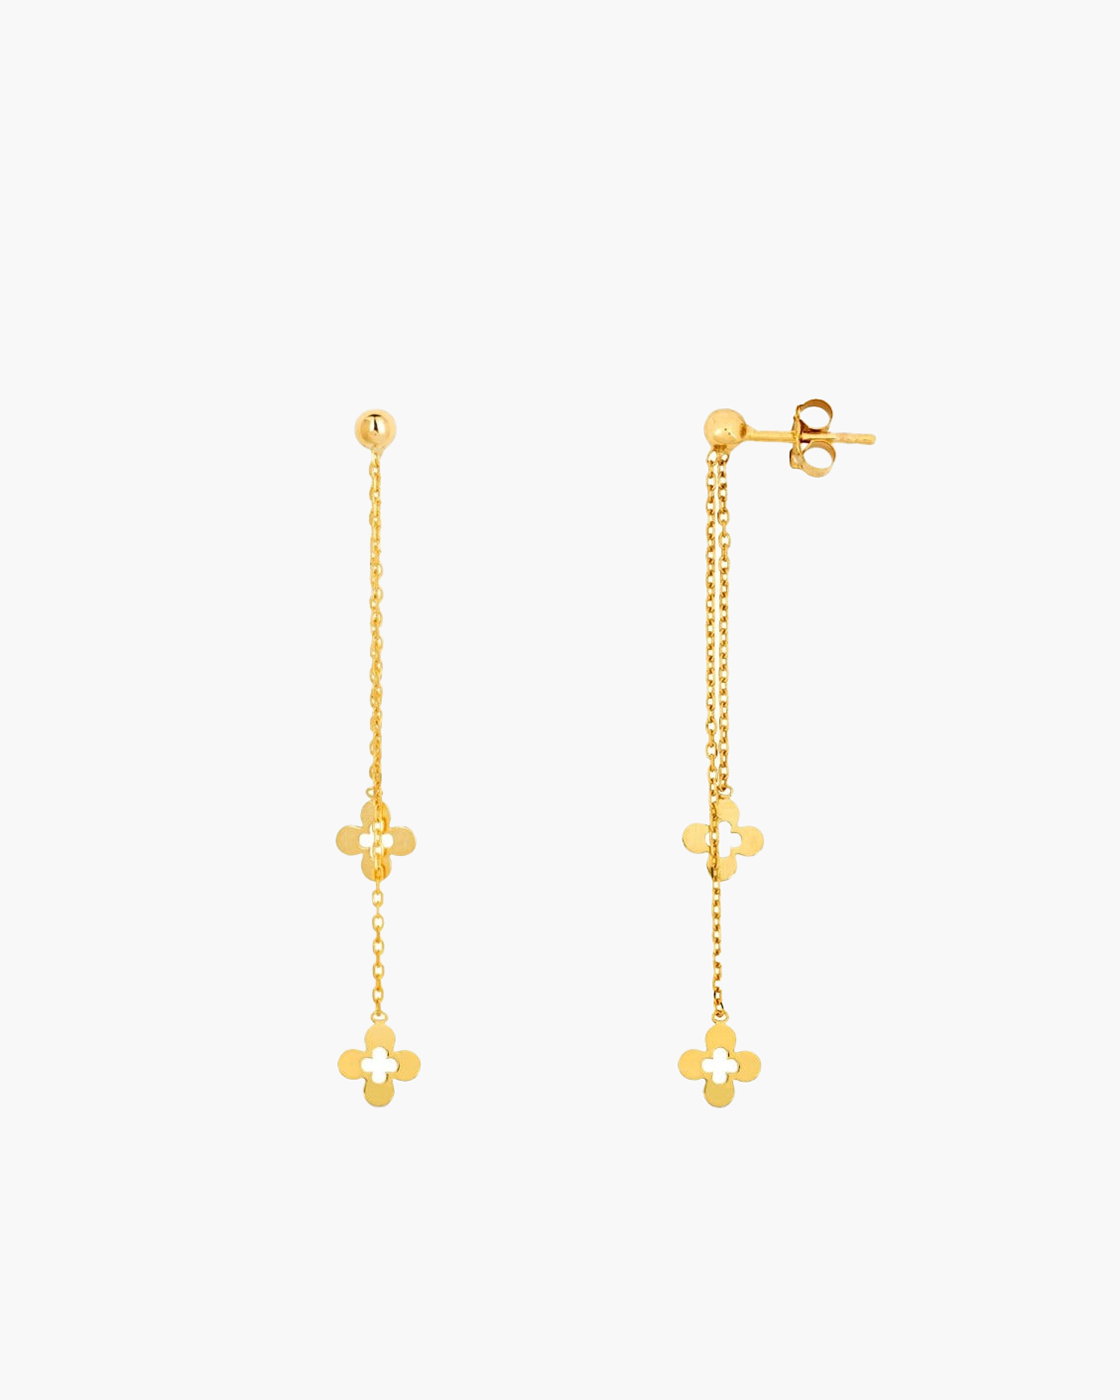 Demeter's Luck Quatrefoil Dangle Chain Drop Earrings